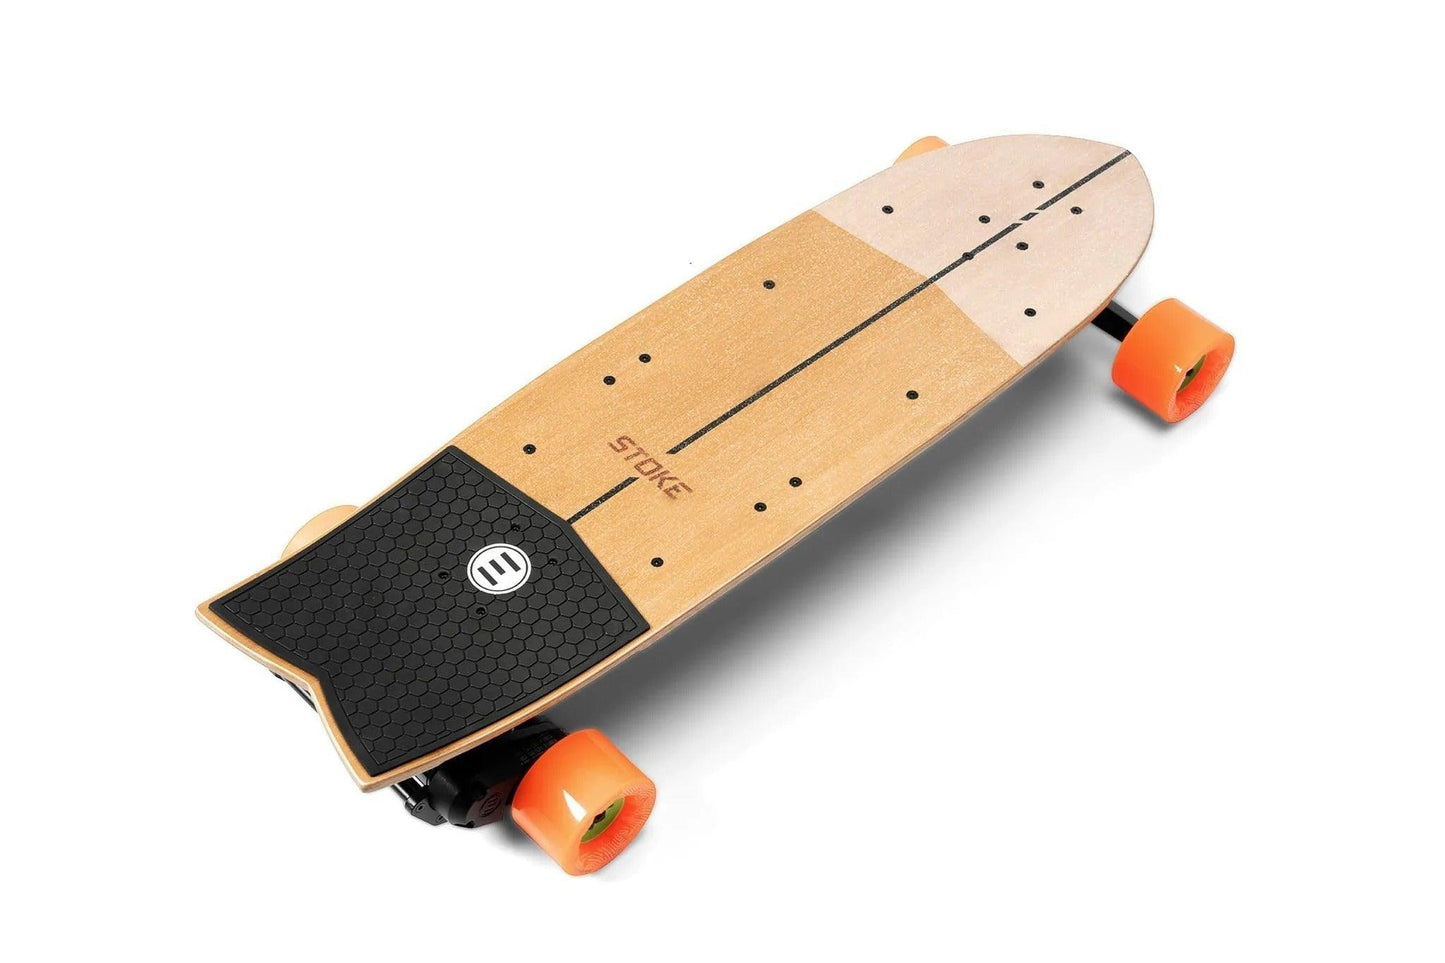 Evolve Stoke Series 2 **On Sale** - Skateboards - skateboards - Electric Monkey NZ